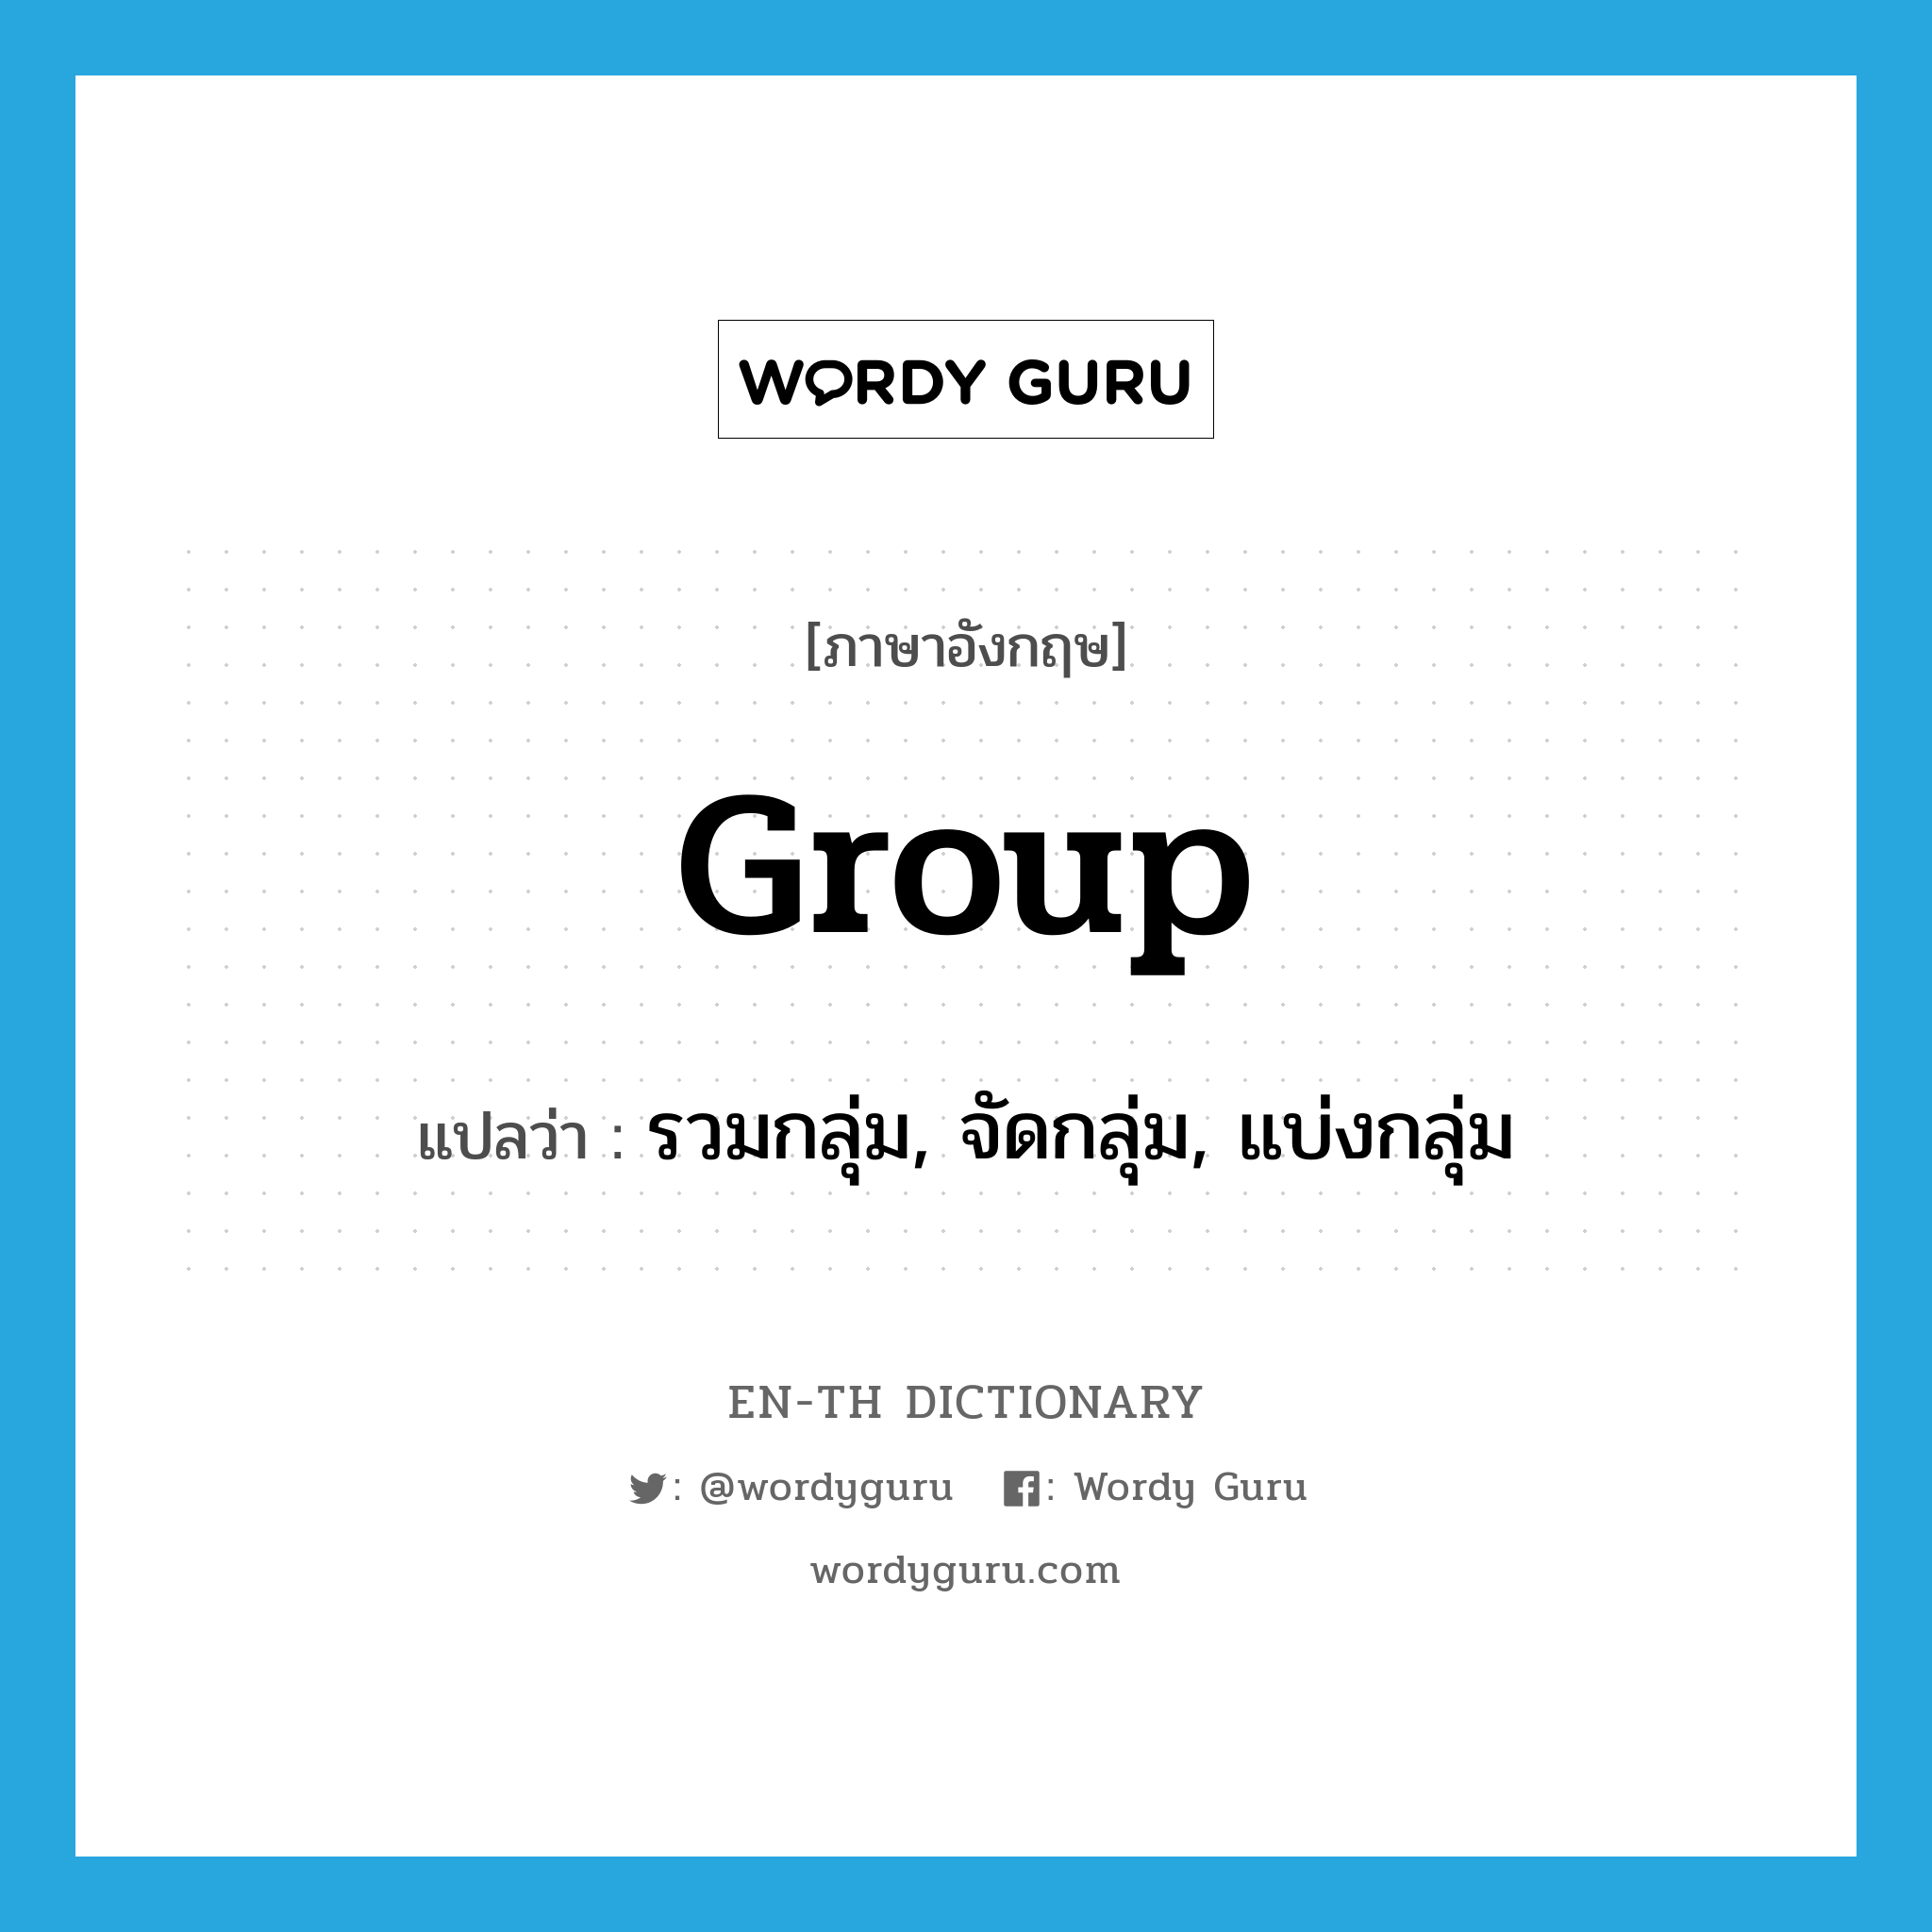 รวมกลุ่ม, จัดกลุ่ม, แบ่งกลุ่ม ภาษาอังกฤษ?, คำศัพท์ภาษาอังกฤษ รวมกลุ่ม, จัดกลุ่ม, แบ่งกลุ่ม แปลว่า group ประเภท VI หมวด VI